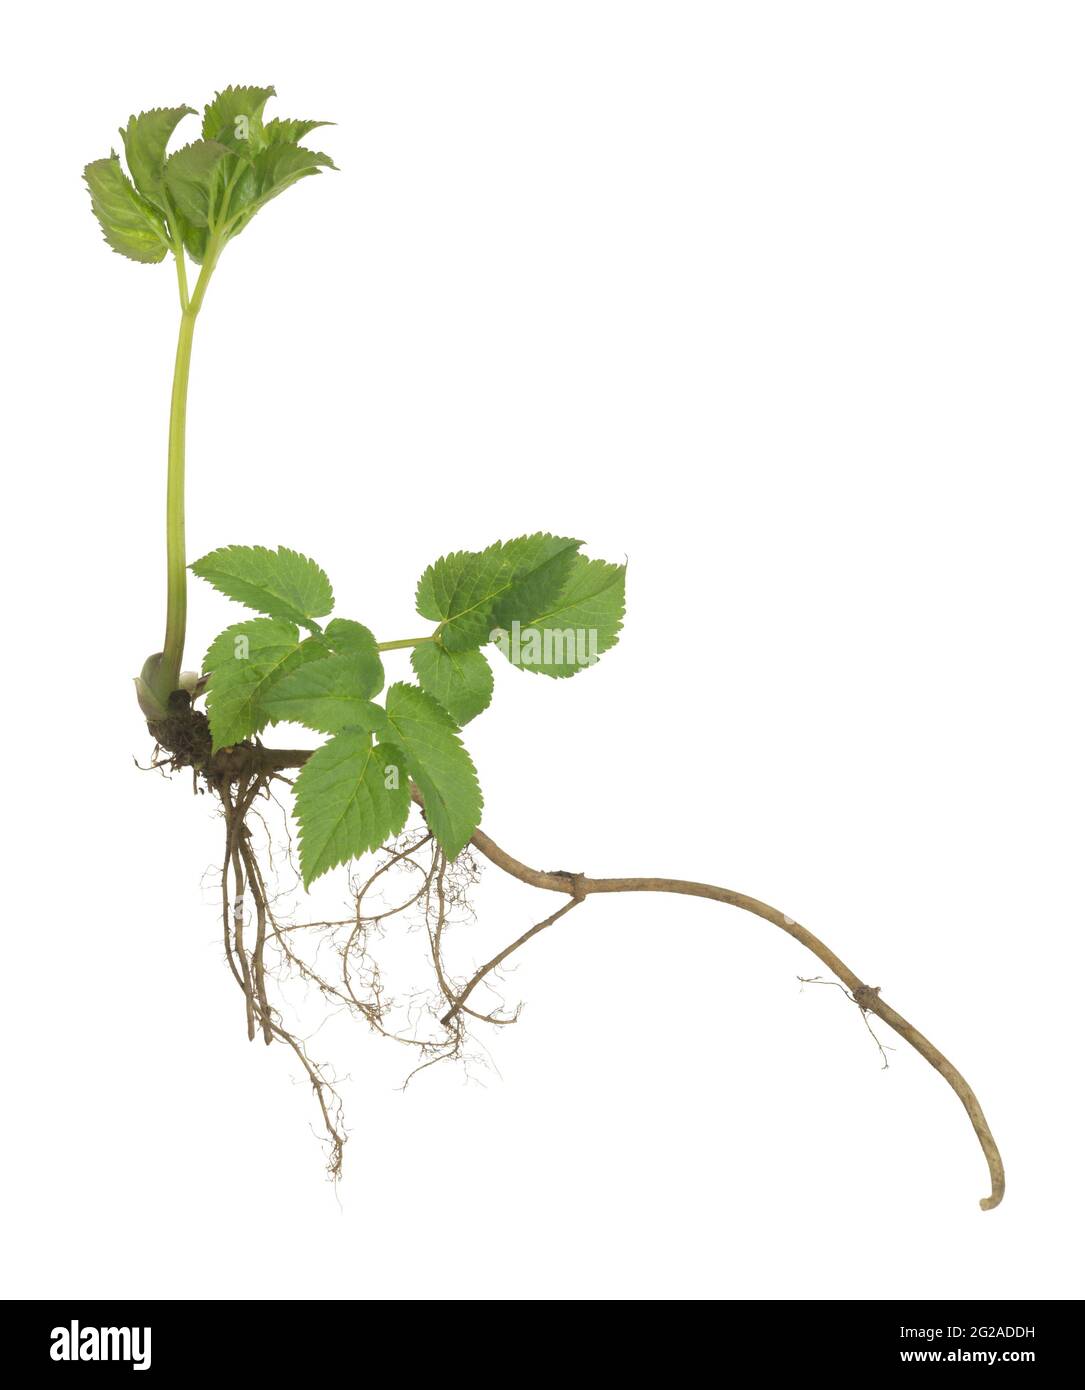 Ground elder, Aegopodium podagraria plant with root isolated on white background Stock Photo